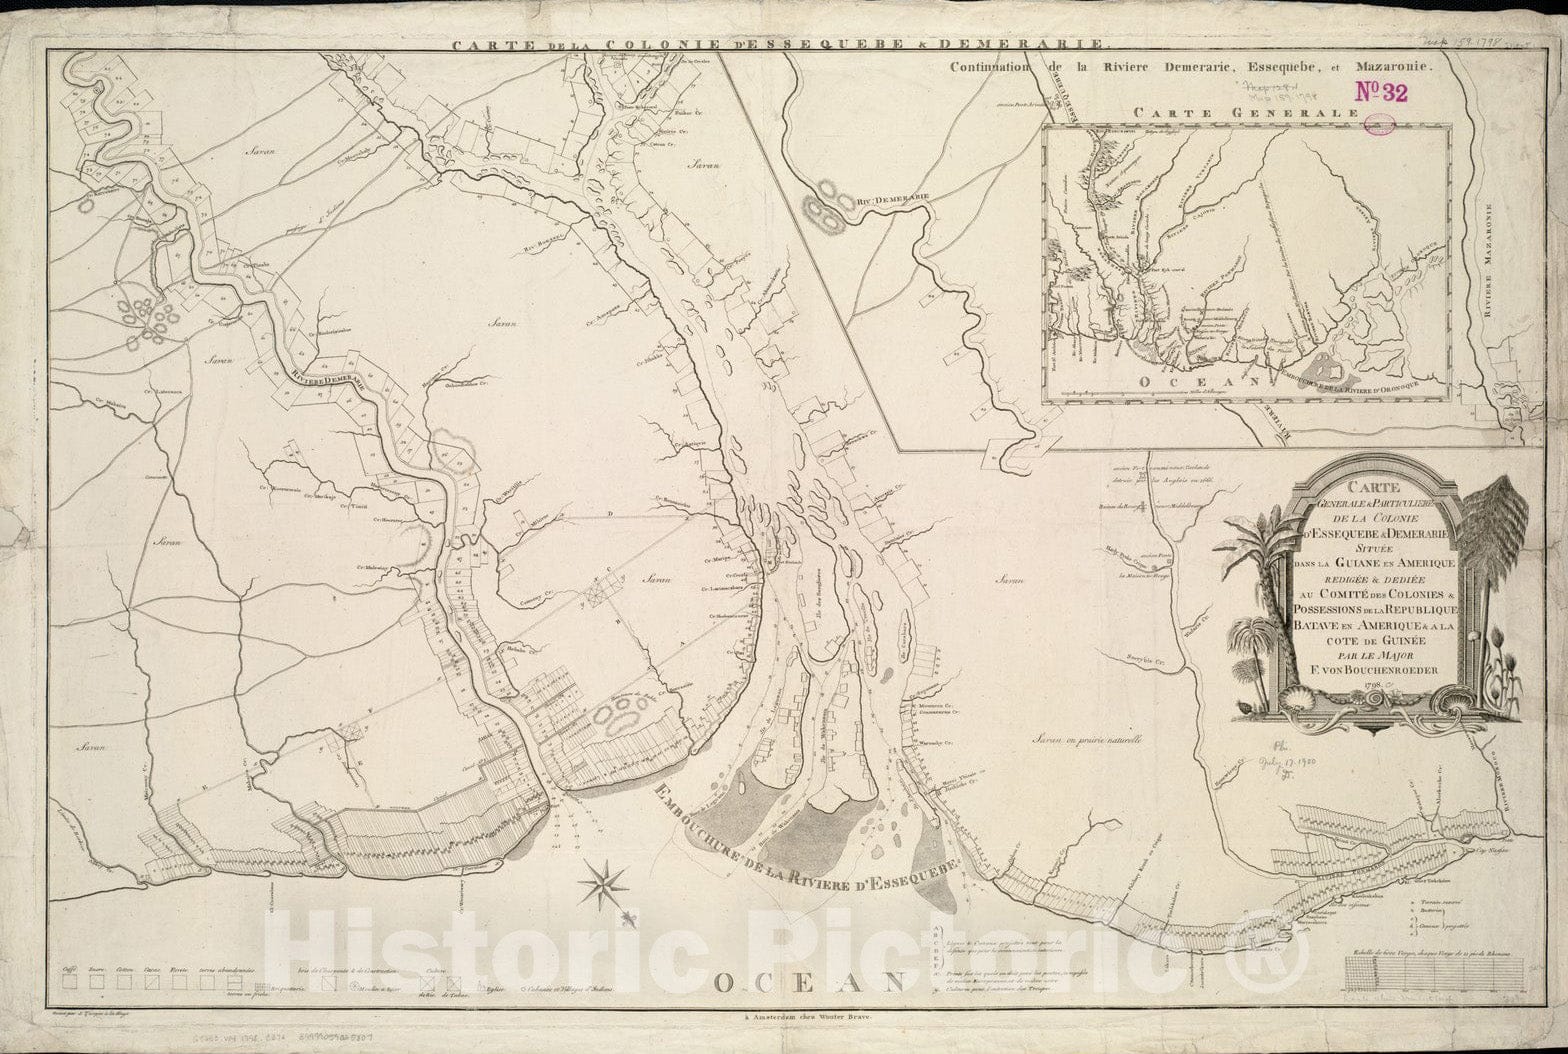 Historical Map, 1798 Carte generale et particuliere de la colonie d'Essequebe & Demerarie situee Dans la Guiane en Amerique, Vintage Wall Art